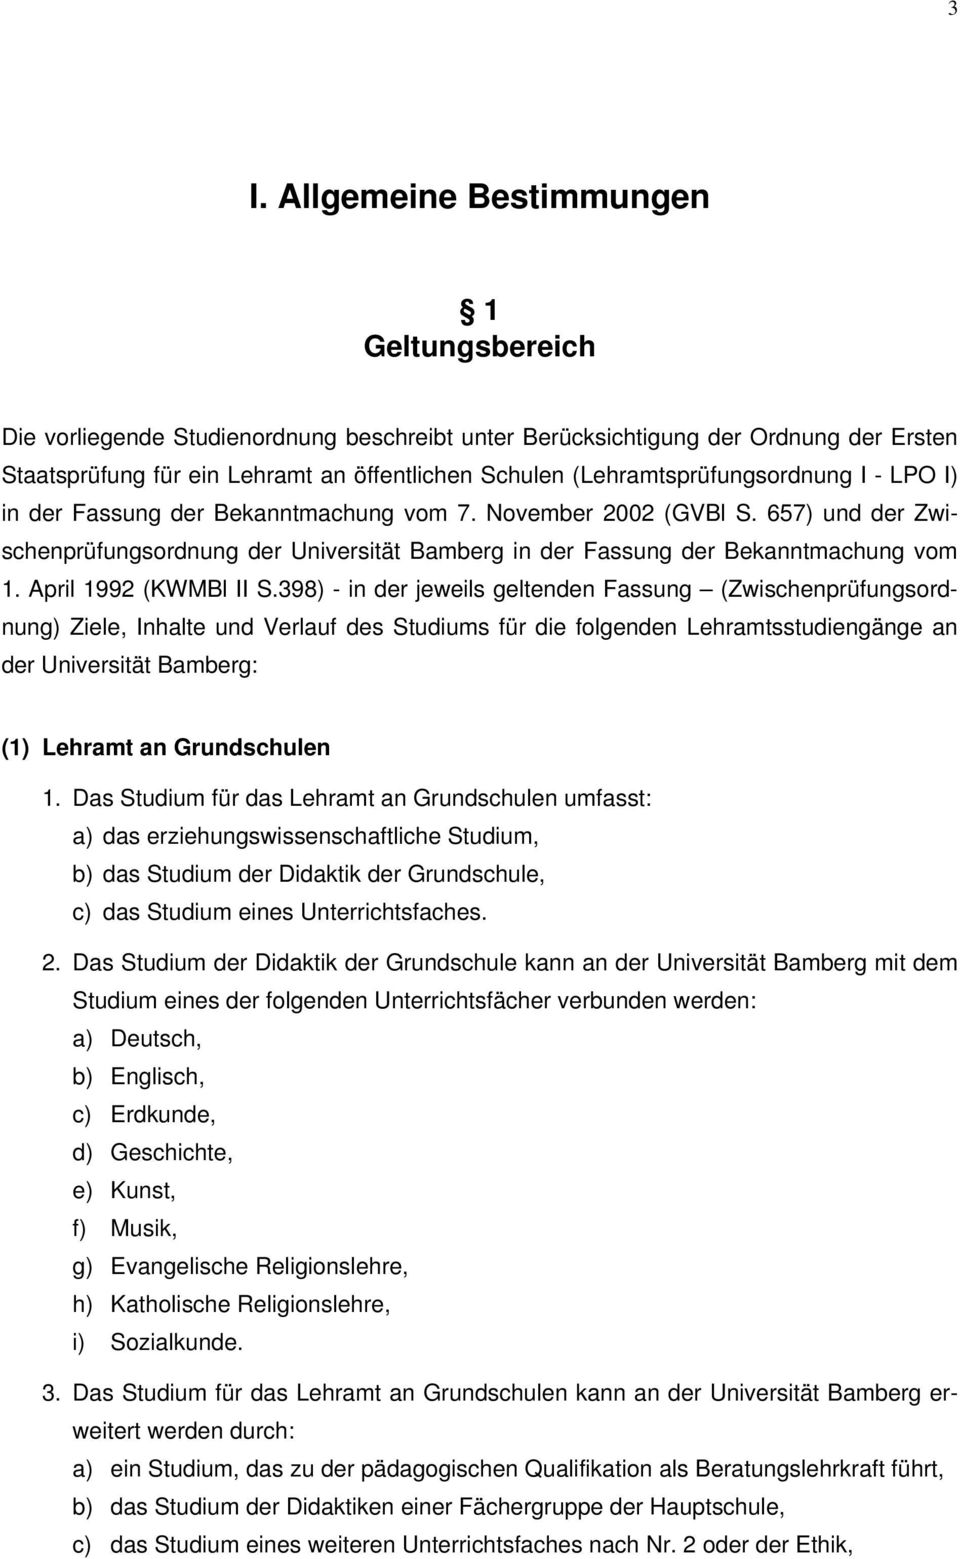 657) und der Zwischenprüfungsordnung der Universität Bamberg in der Fassung der Bekanntmachung vom 1. April 1992 (KWMBl II S.